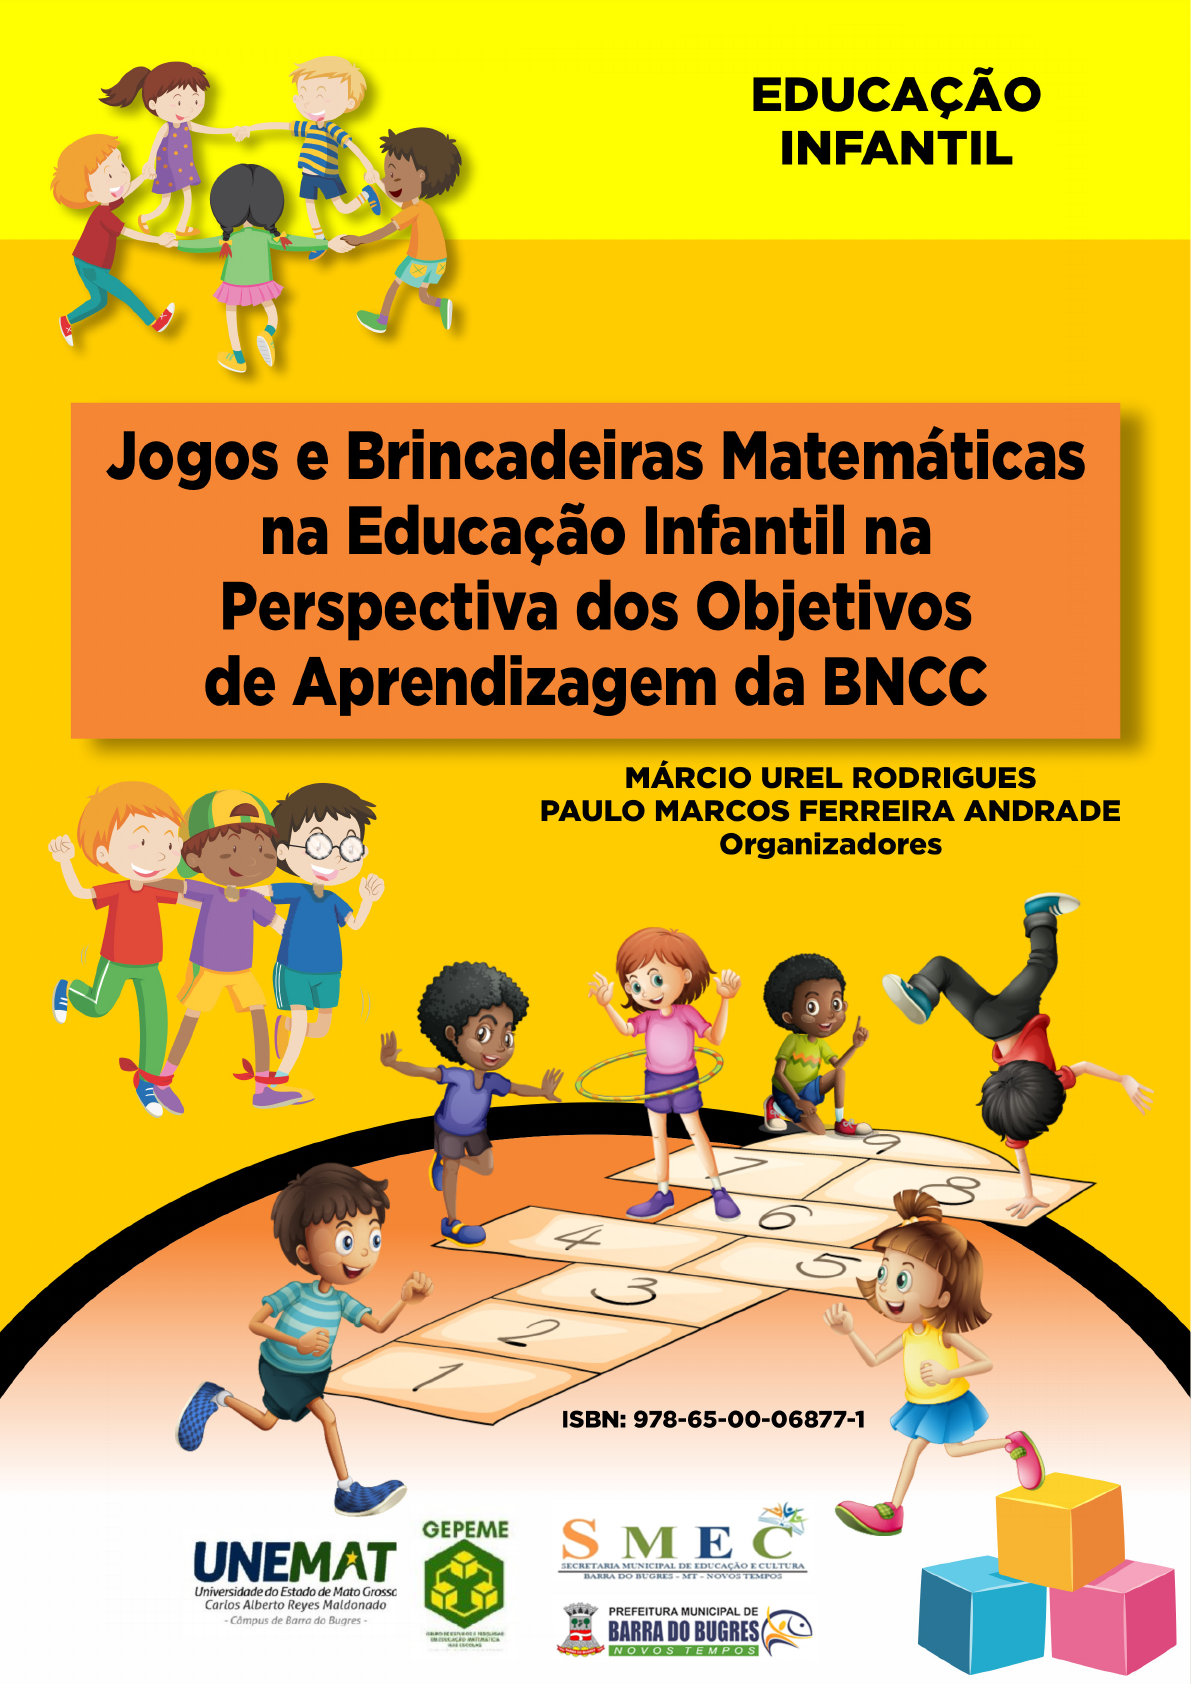 JOGOS DE TRILHA  Jogos matemáticos, Atividades para educação infantil,  Educação infantil